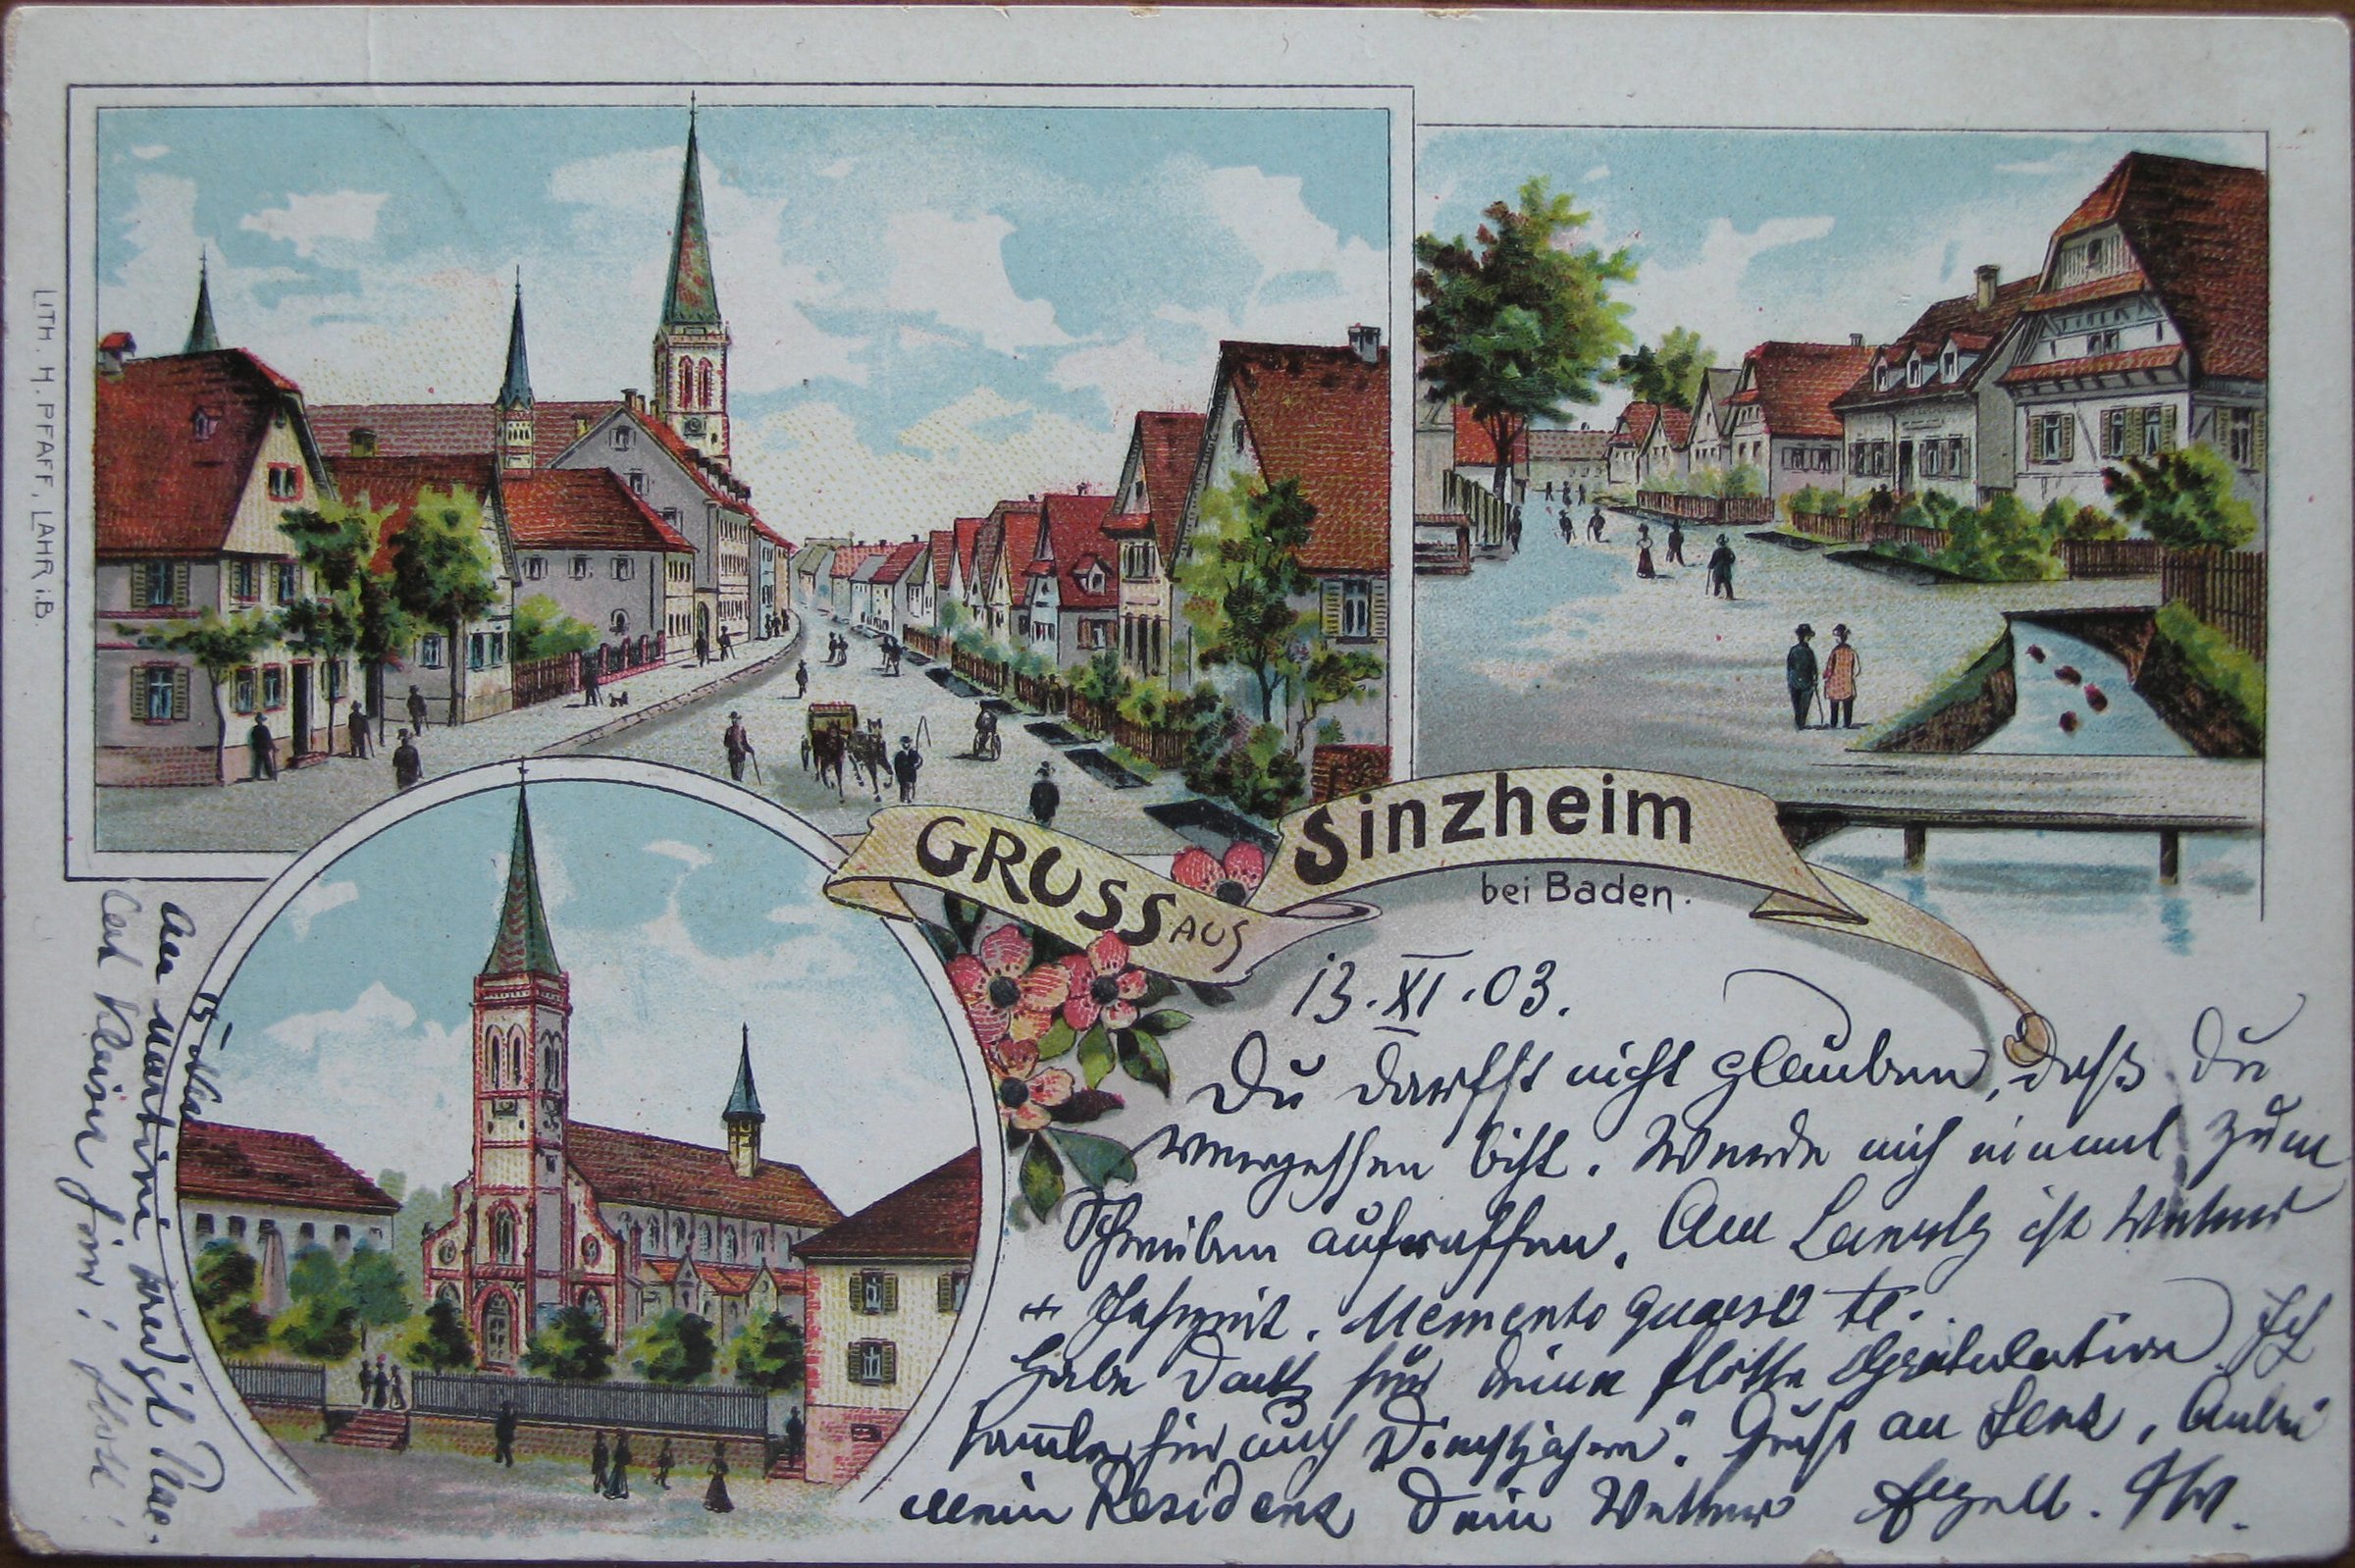 Historische, gezeichnete Ansichtskarte aus Sinzheim